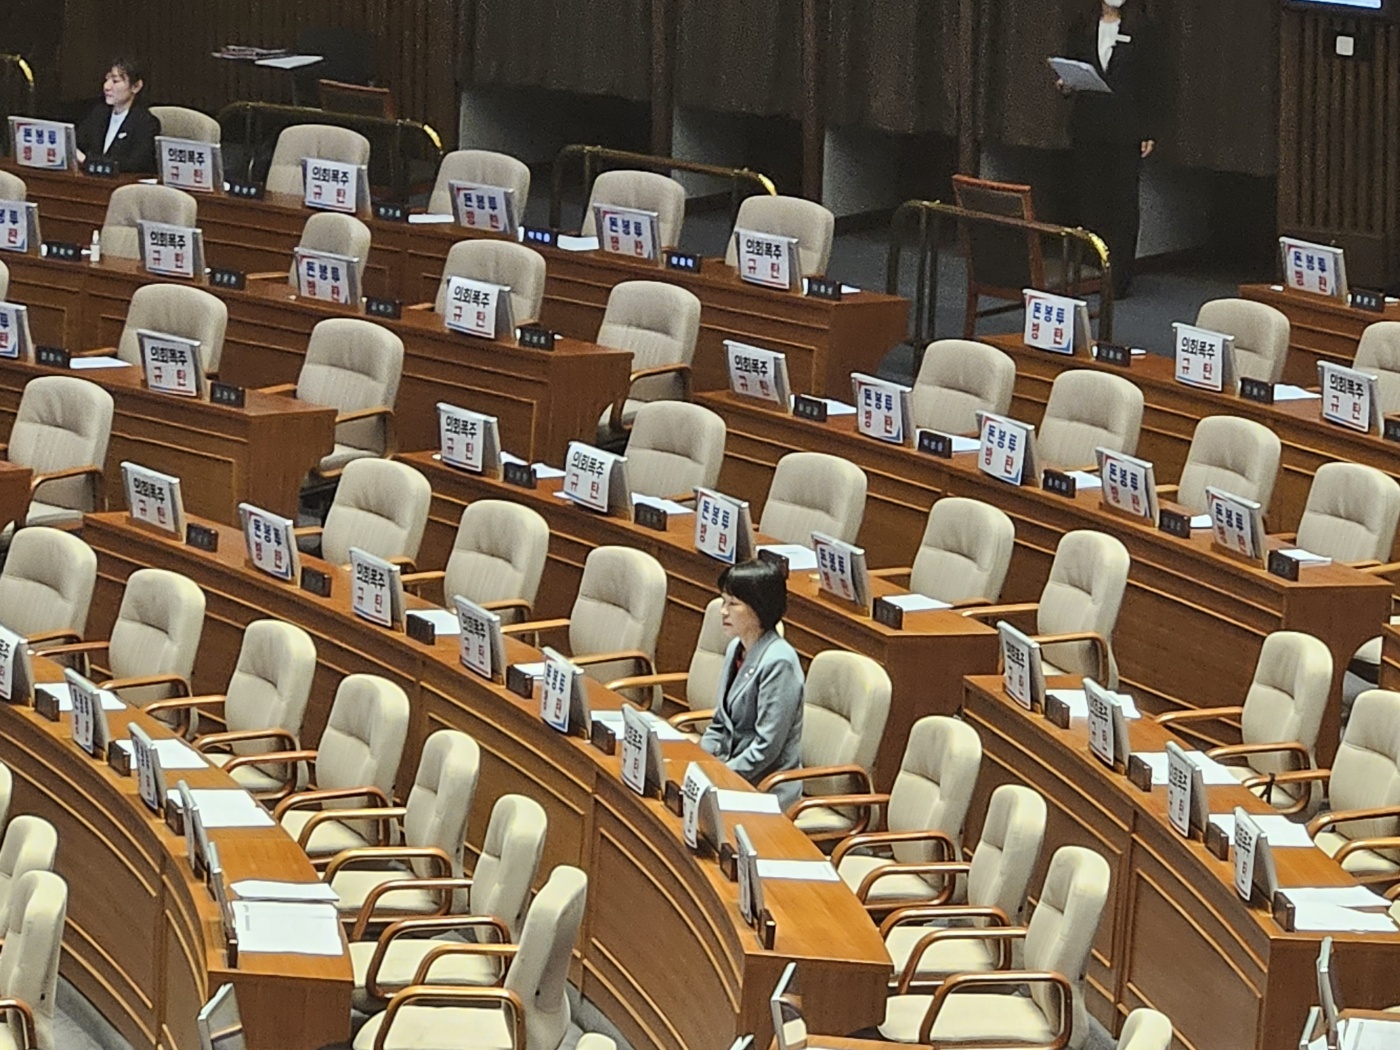 국민의힘 의원들이 퇴장한 본회의장에 최연숙 의원과 김예지 의원만 남아 있다.